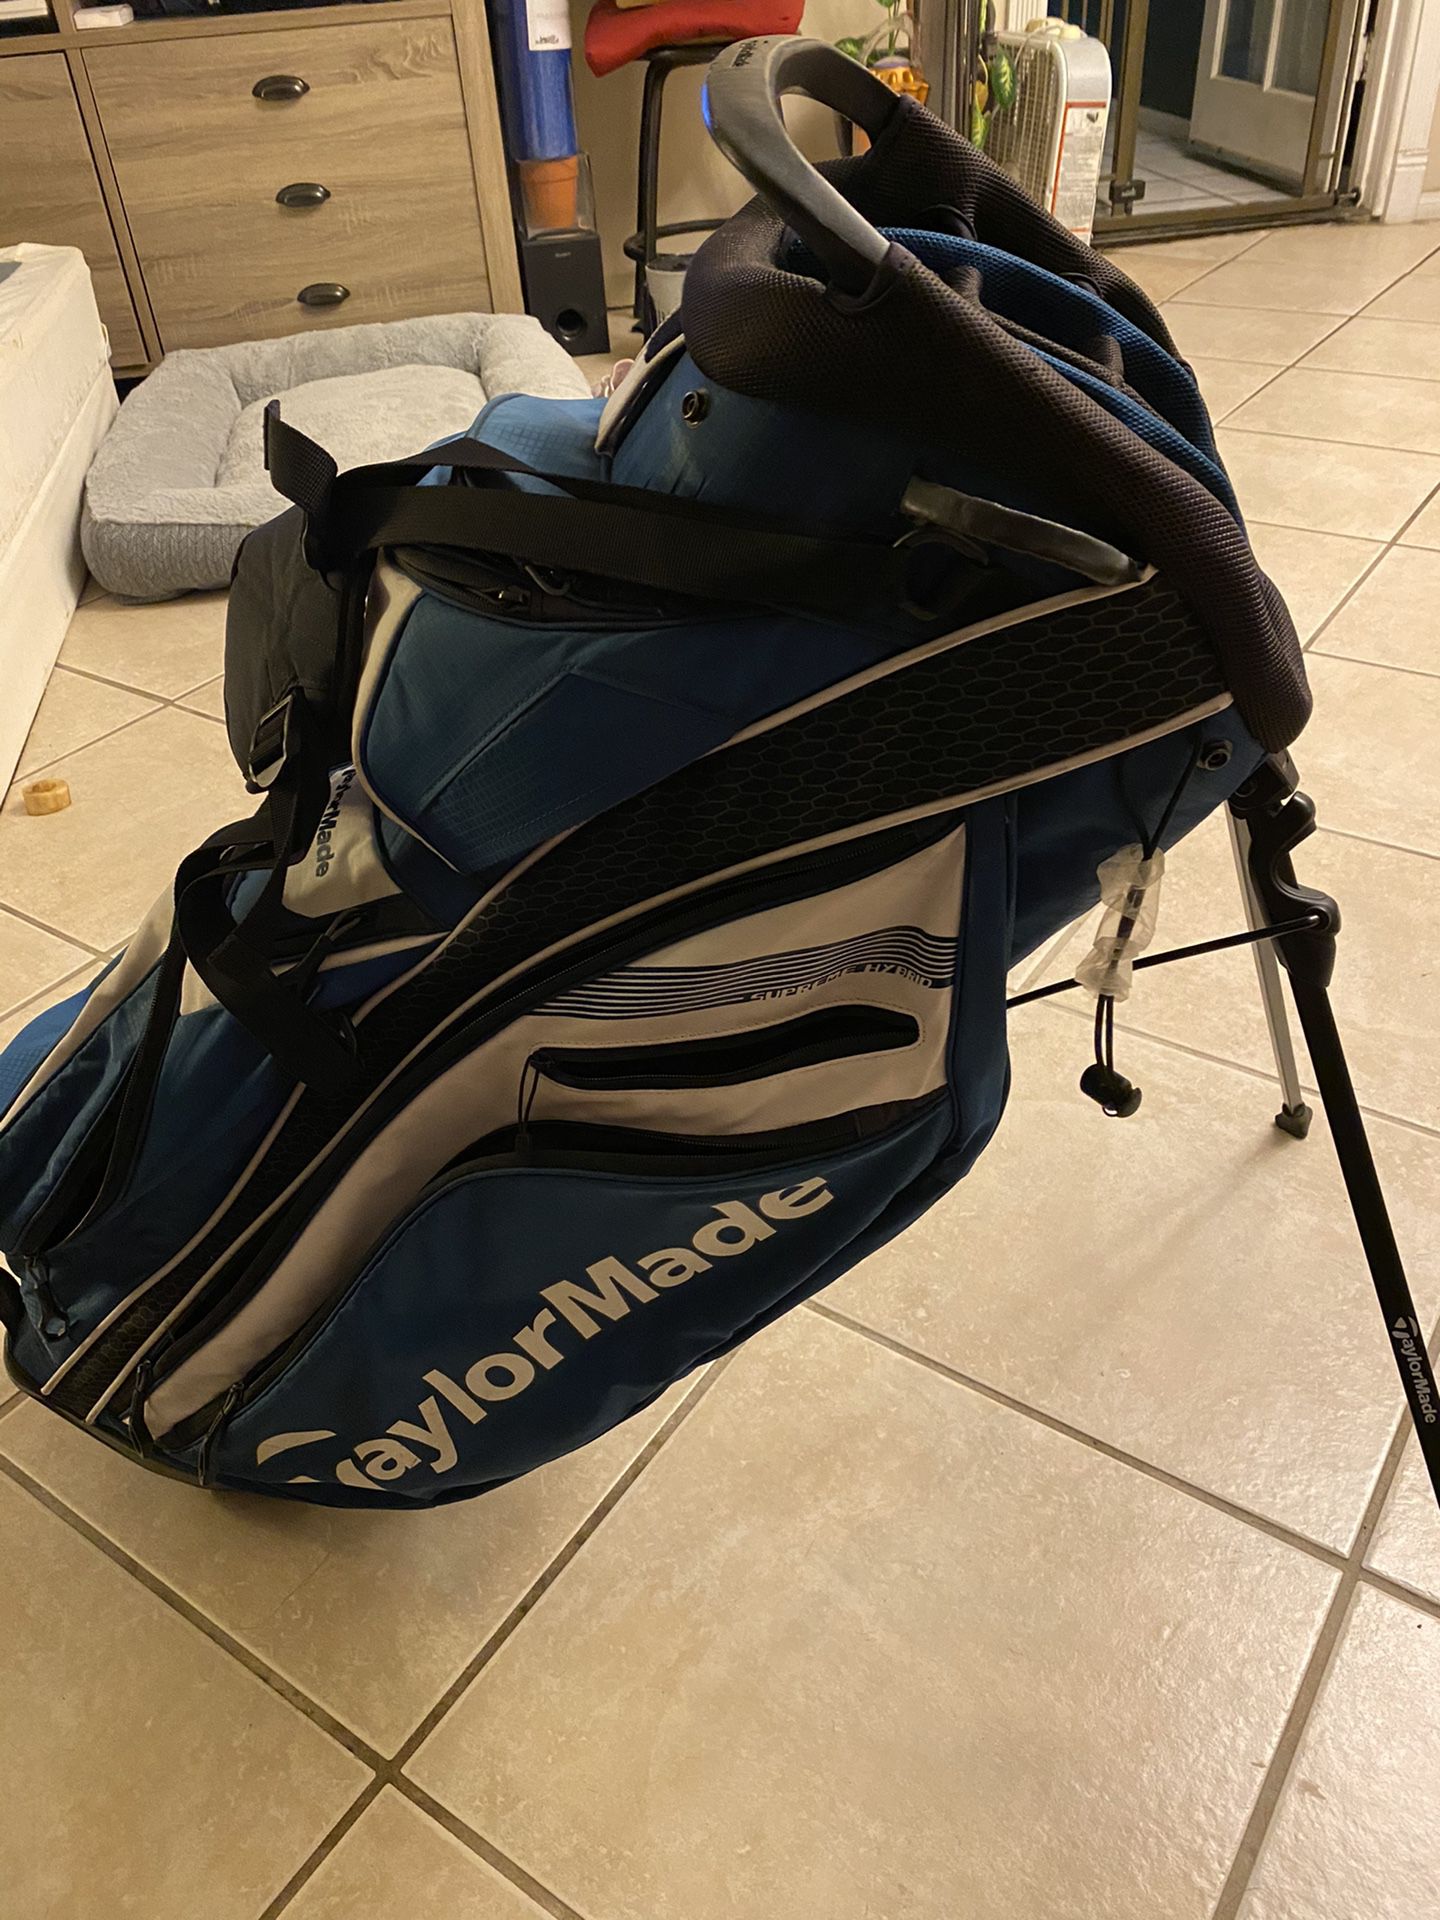 Taylormade Golf Bag